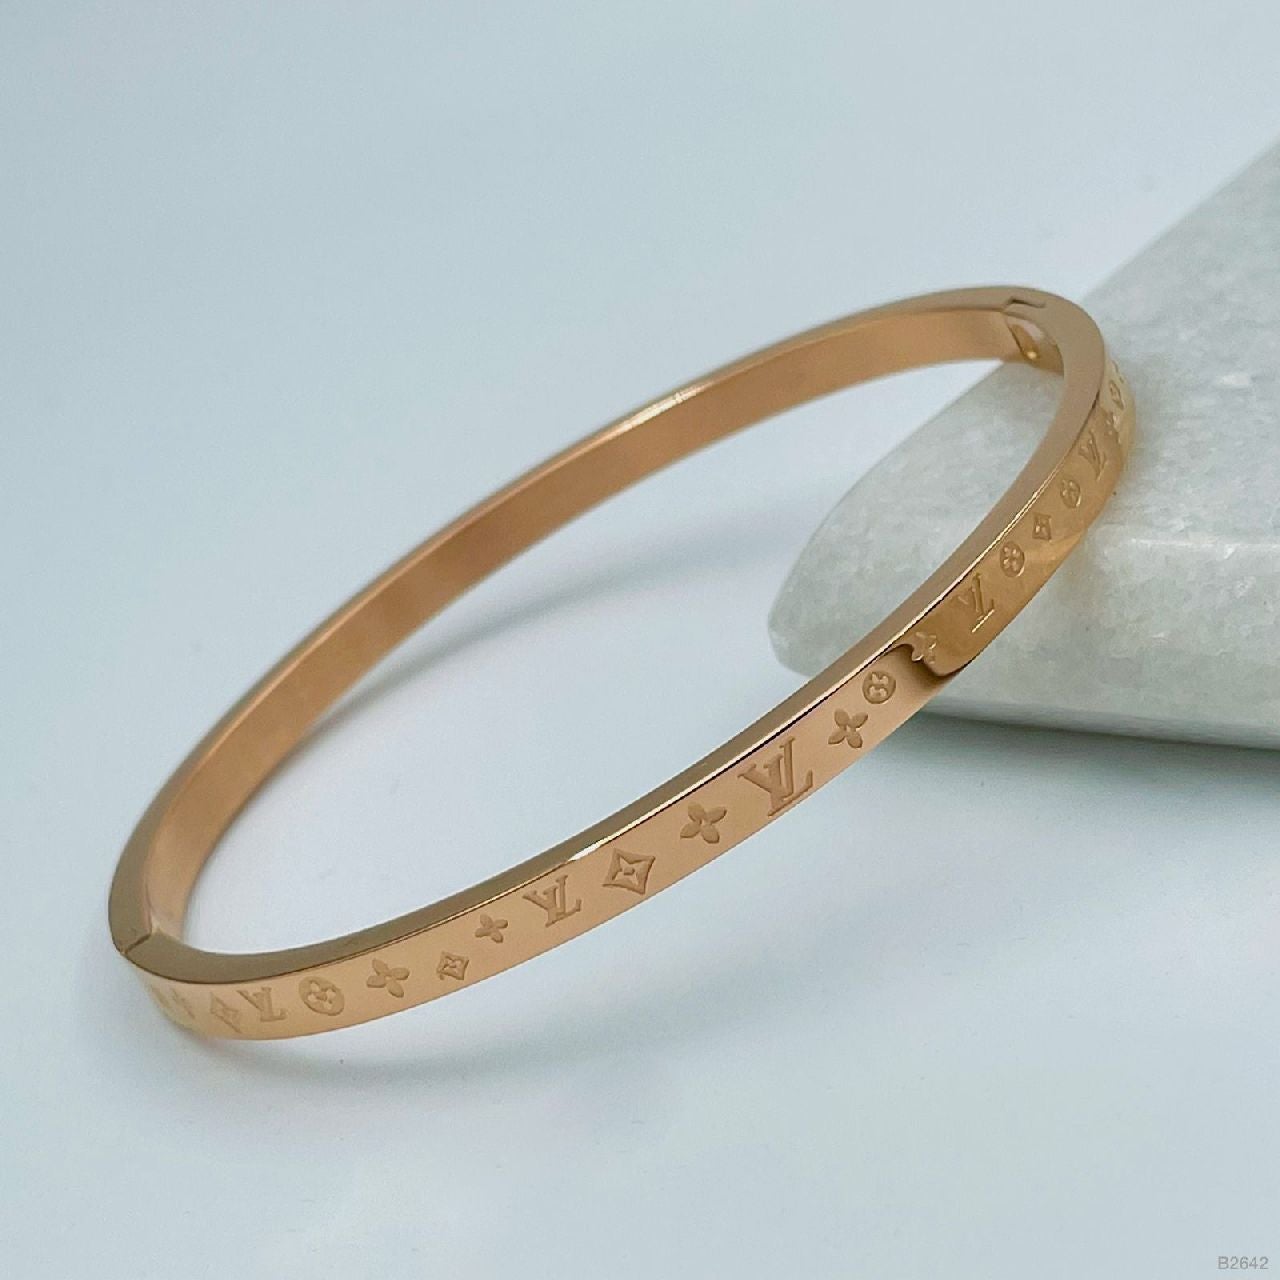 Stainless Steel Stylish Bracelet Bangle Kada For Women Rose Gold